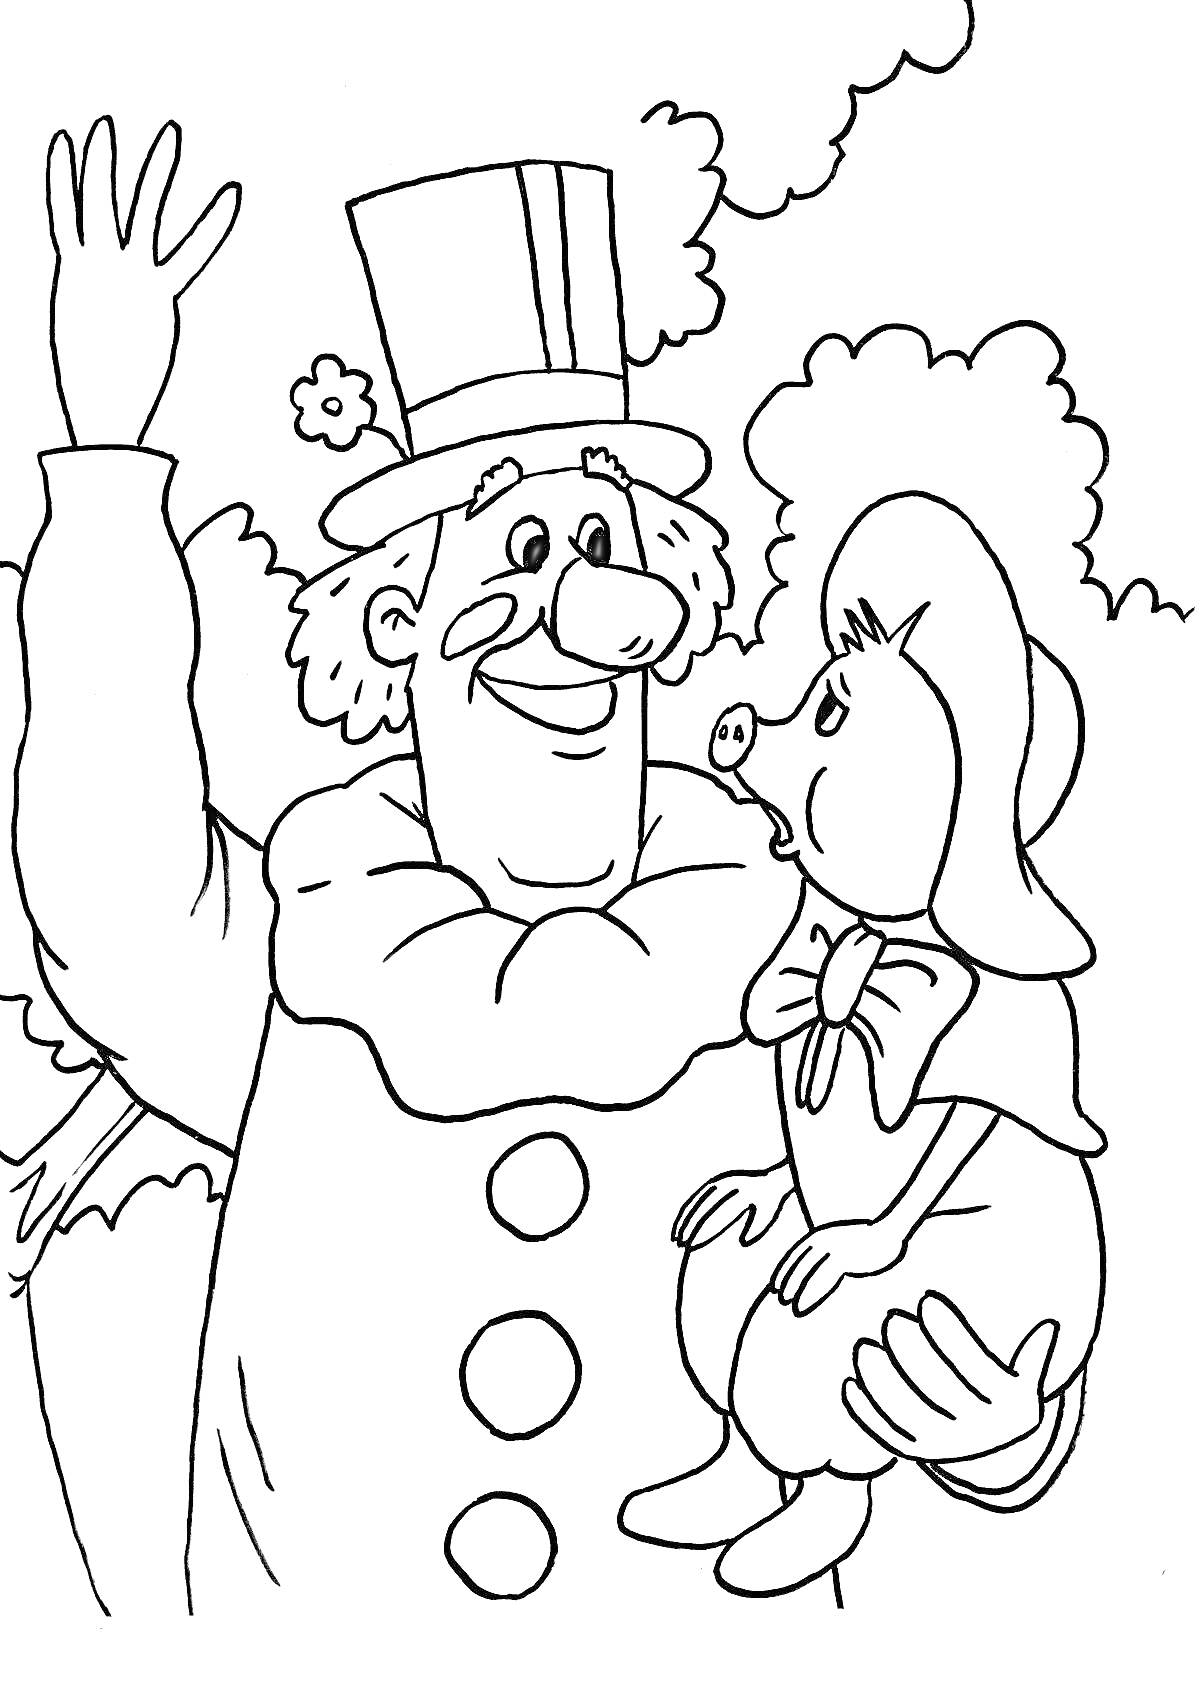 Раскраска Клоун с большим носом в цилиндре держит на руках поросенка в бантике